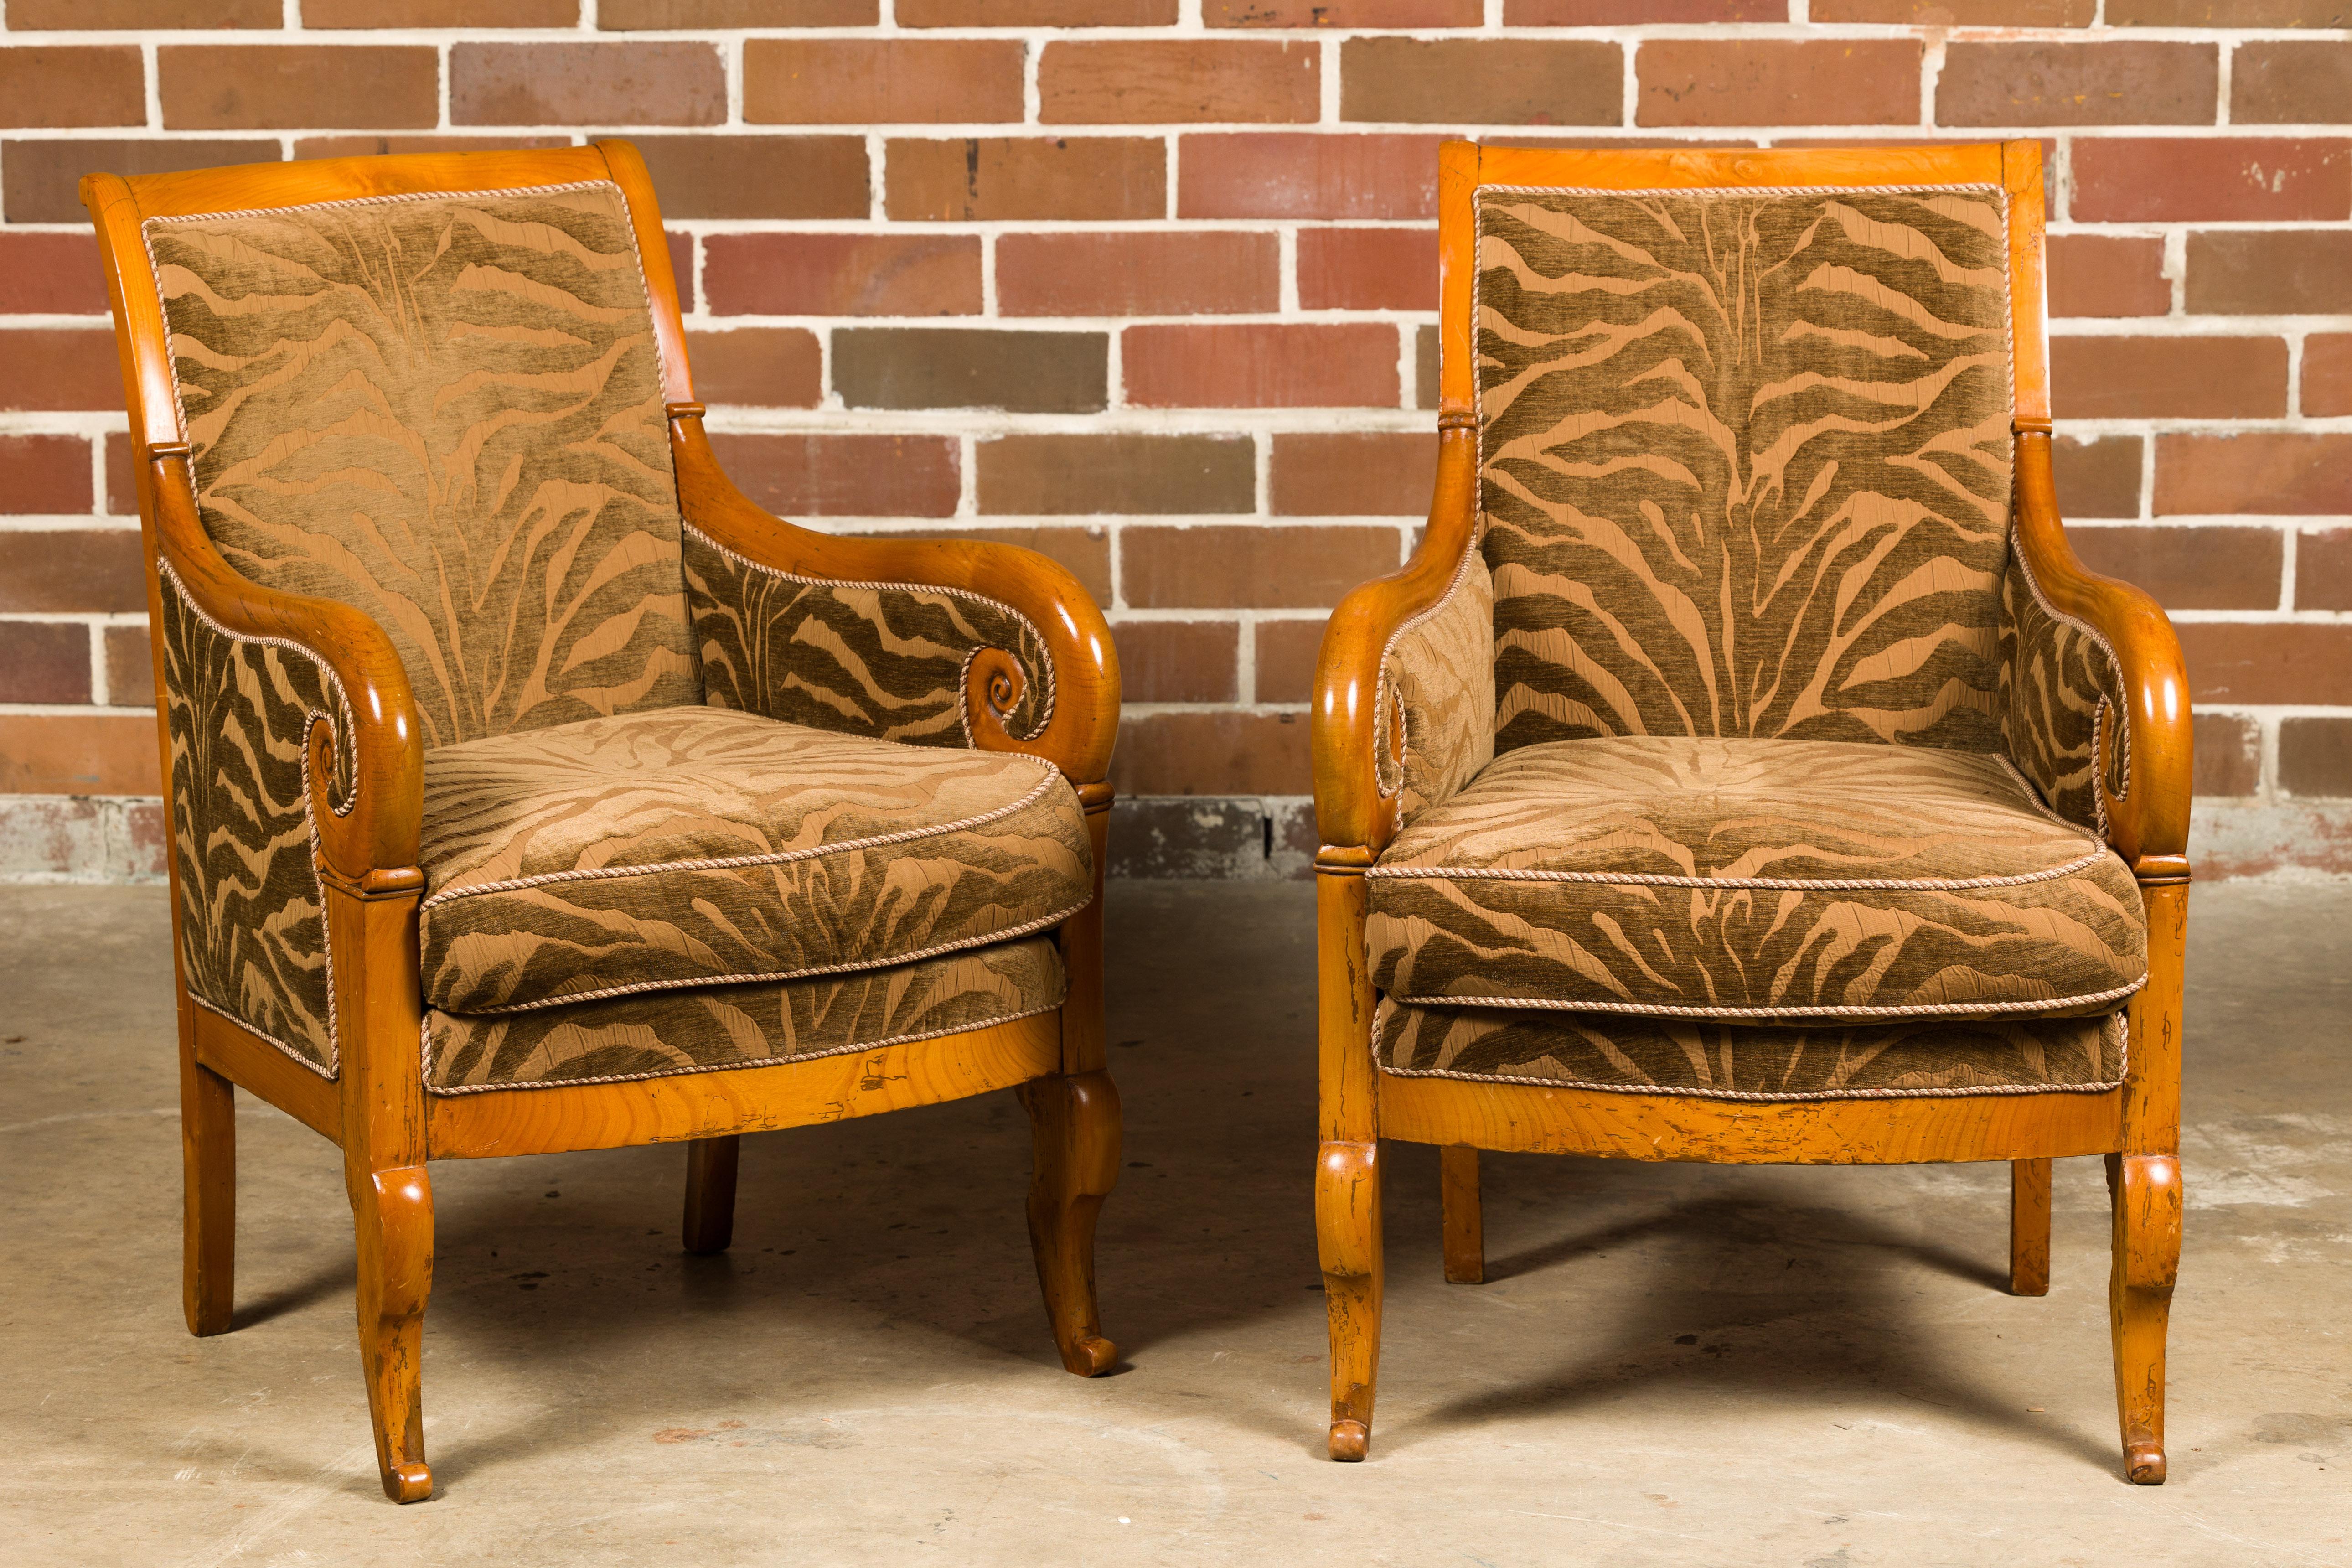 Ein Paar französischer Bergère-Stühle im Louis-Philippe-Stil aus Nussbaumholz aus dem 19. Jahrhundert mit geschwungenen Armlehnen, geschnitzten Vorderbeinen und Zebradruck-Polsterung. Dieses prächtige Paar französischer Nussbaum-Bergstühle im